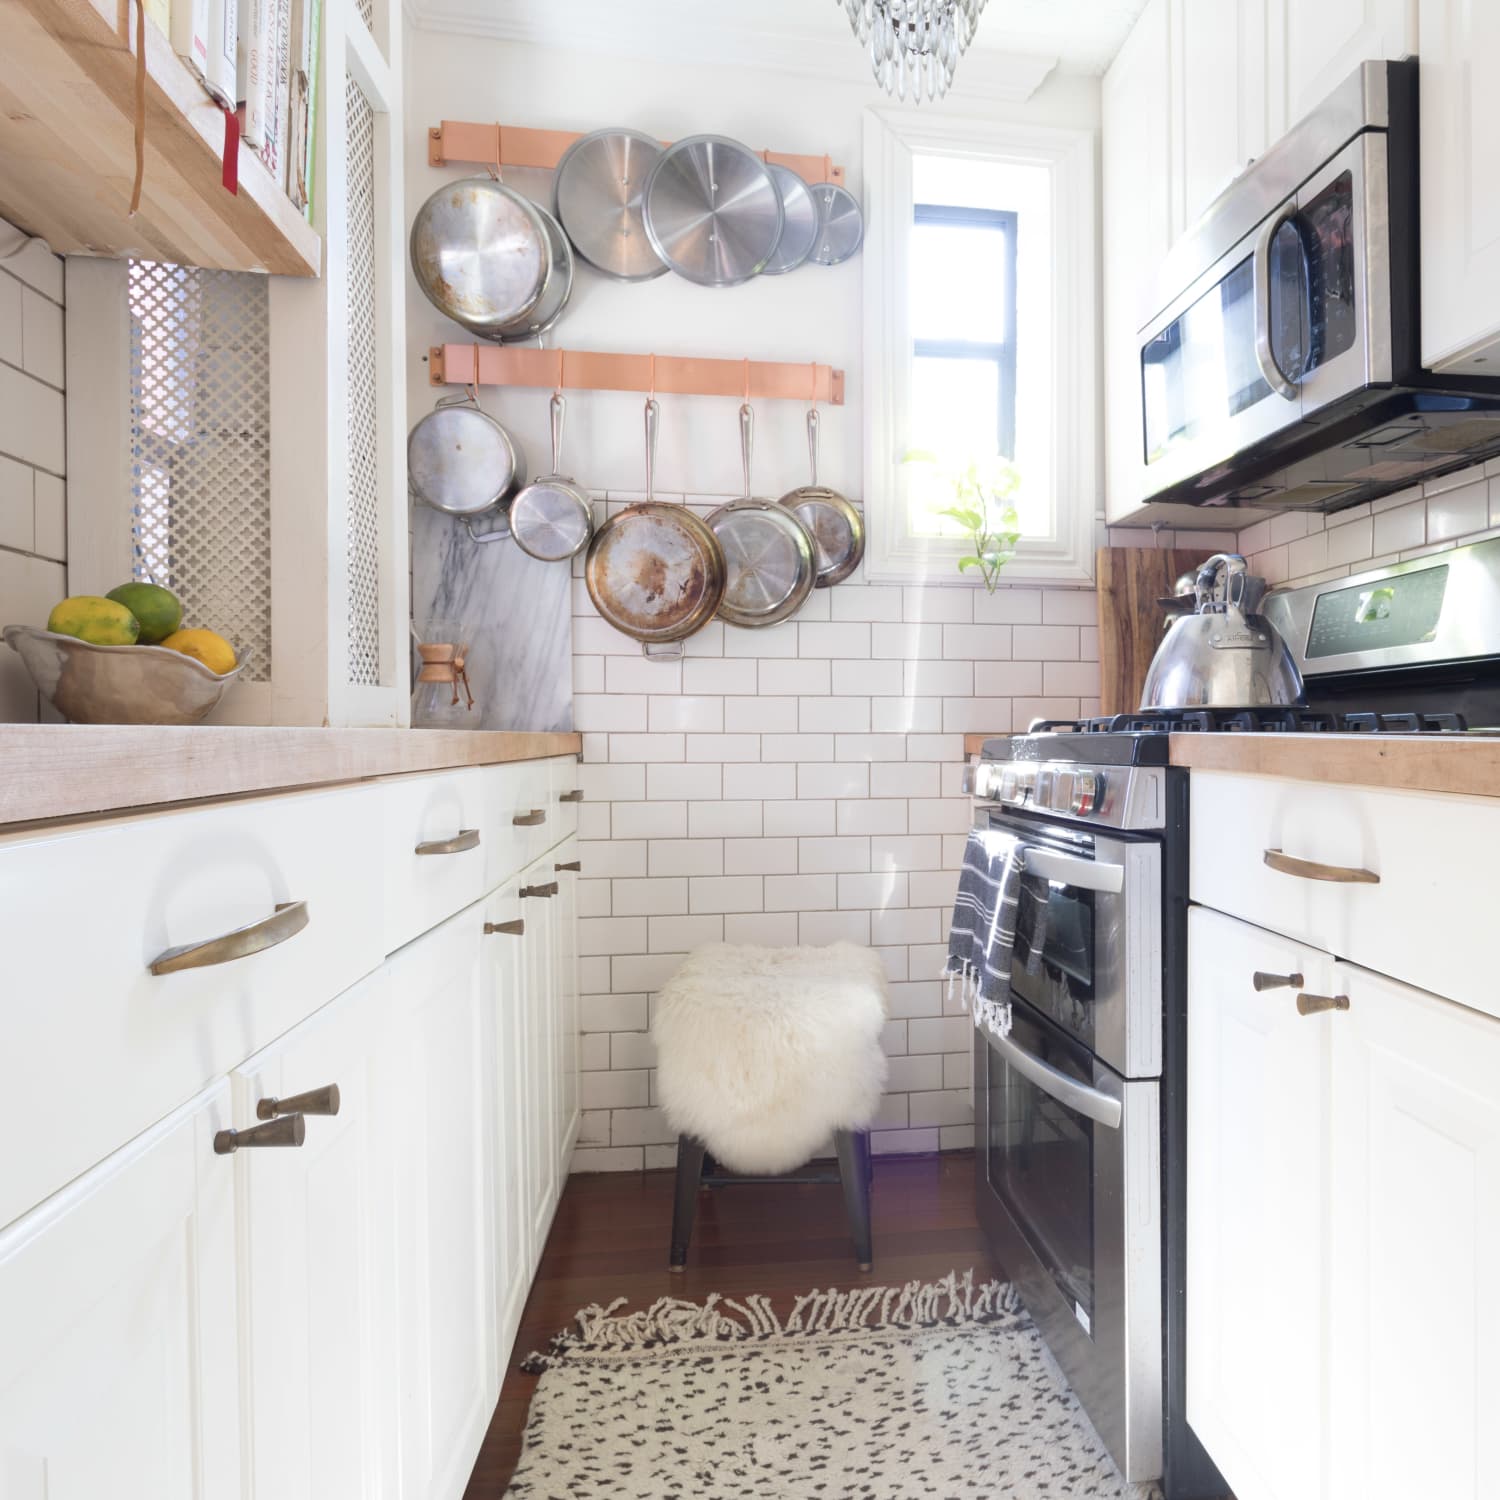 Teeny, Tiny NYC Kitchen Inspiration   Apartment Therapy